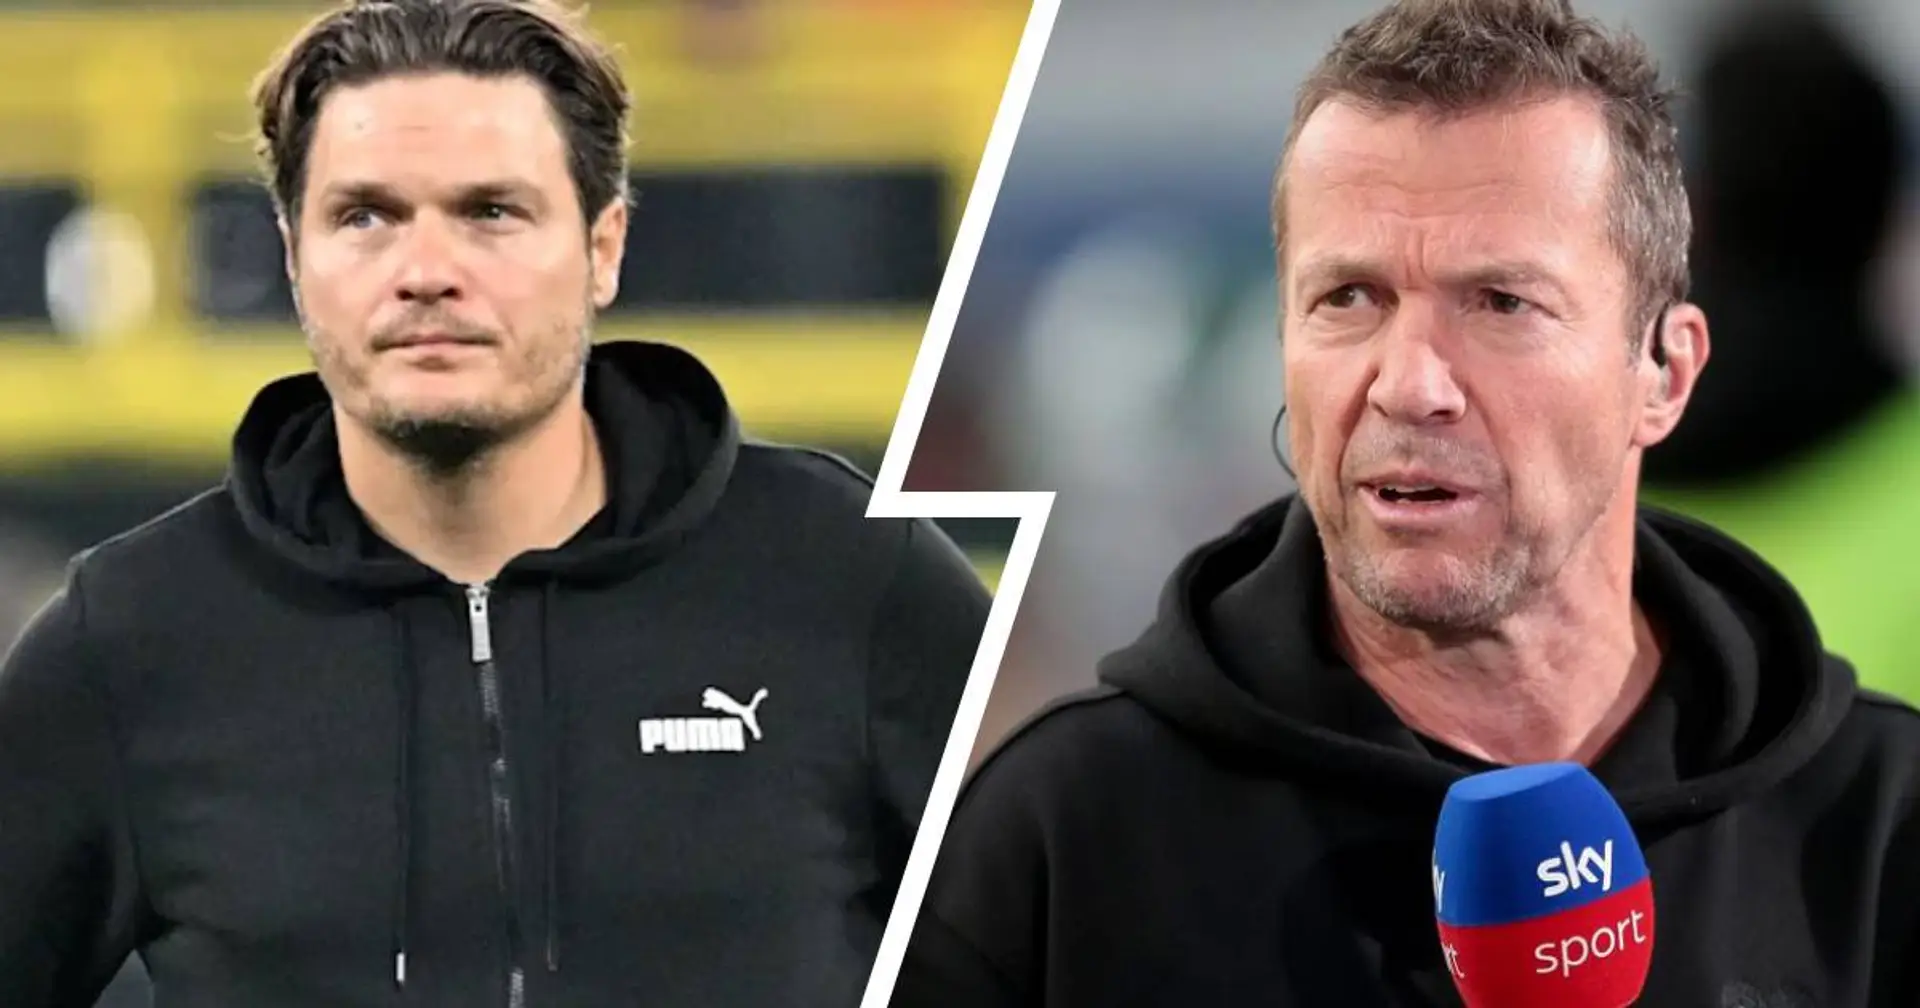 "Ein verdienter und wichtiger Sieg": Matthäus lobt BVB und sagt heißen Kampf um CL-Platz vorher